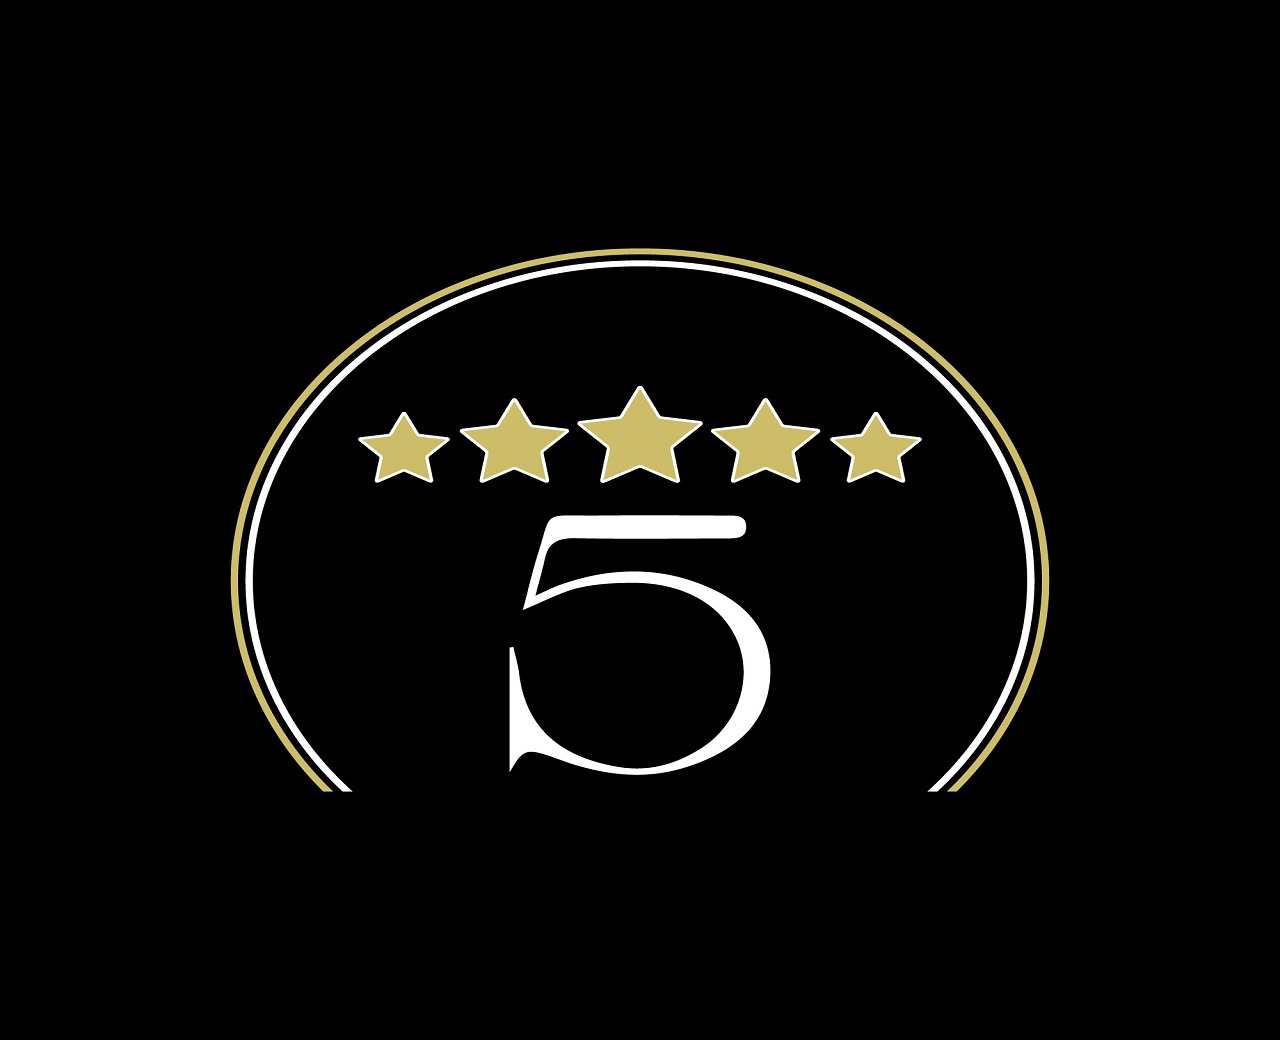 5 Star Salon Academy